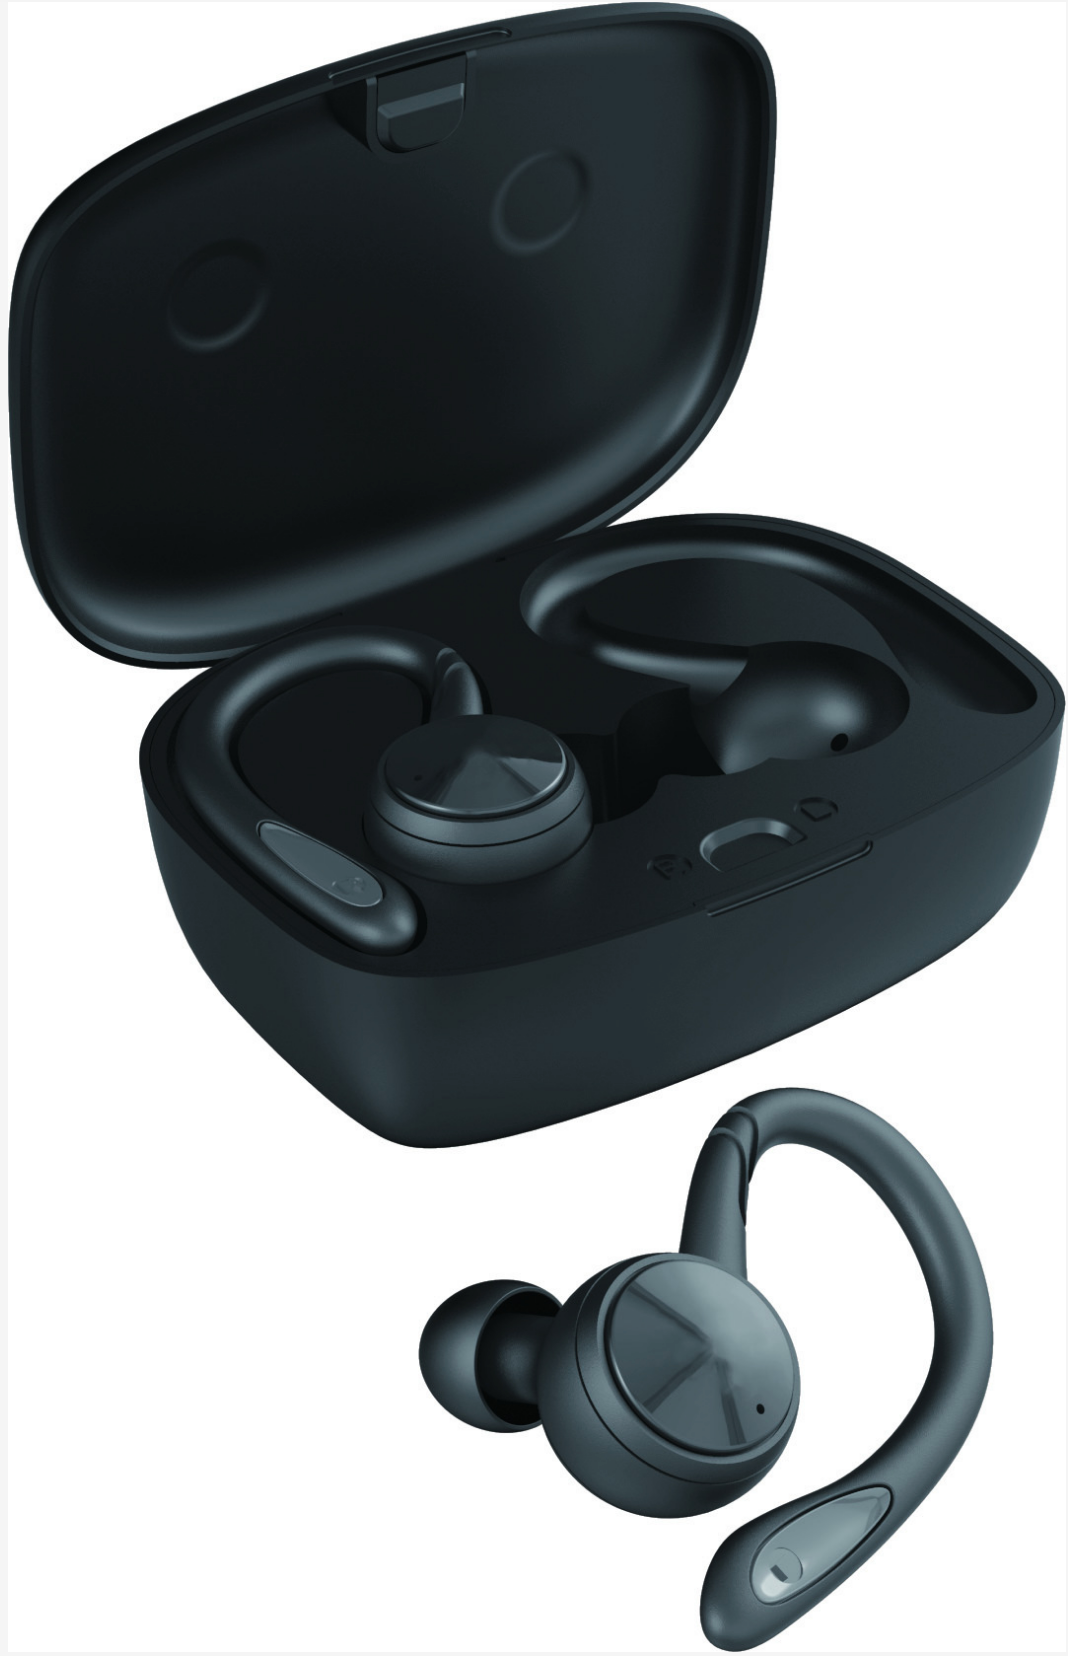 Smart Wireless Earbuds, Smart true wireless headphones